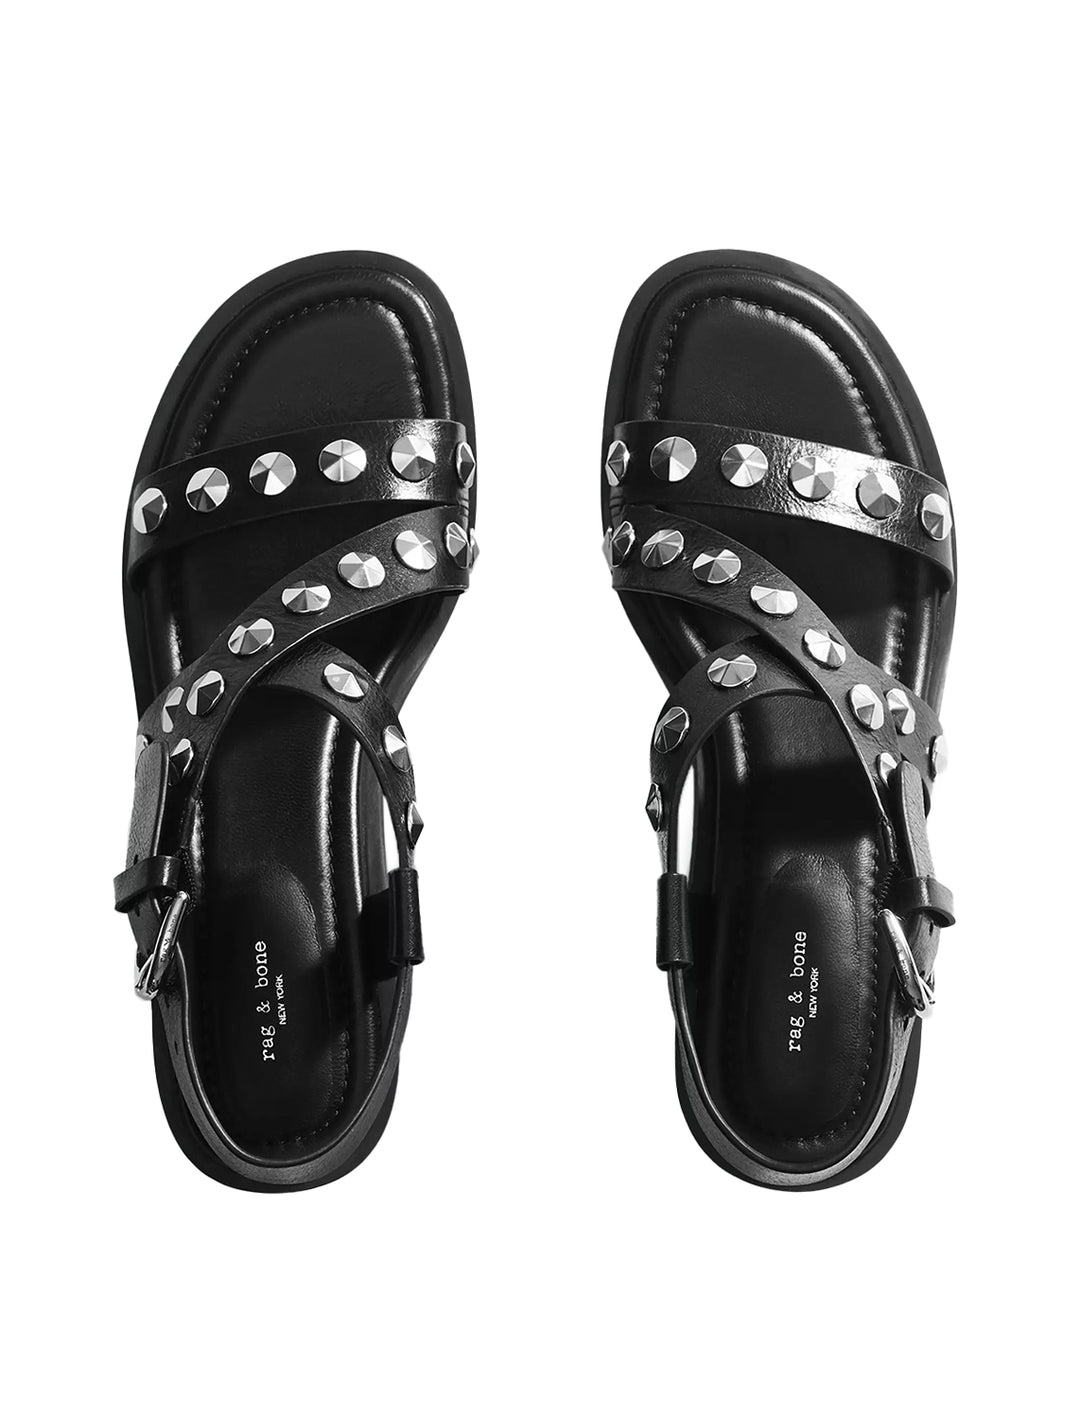 Overhead view of Rag & Bone's geo stud block heel sandal in black.